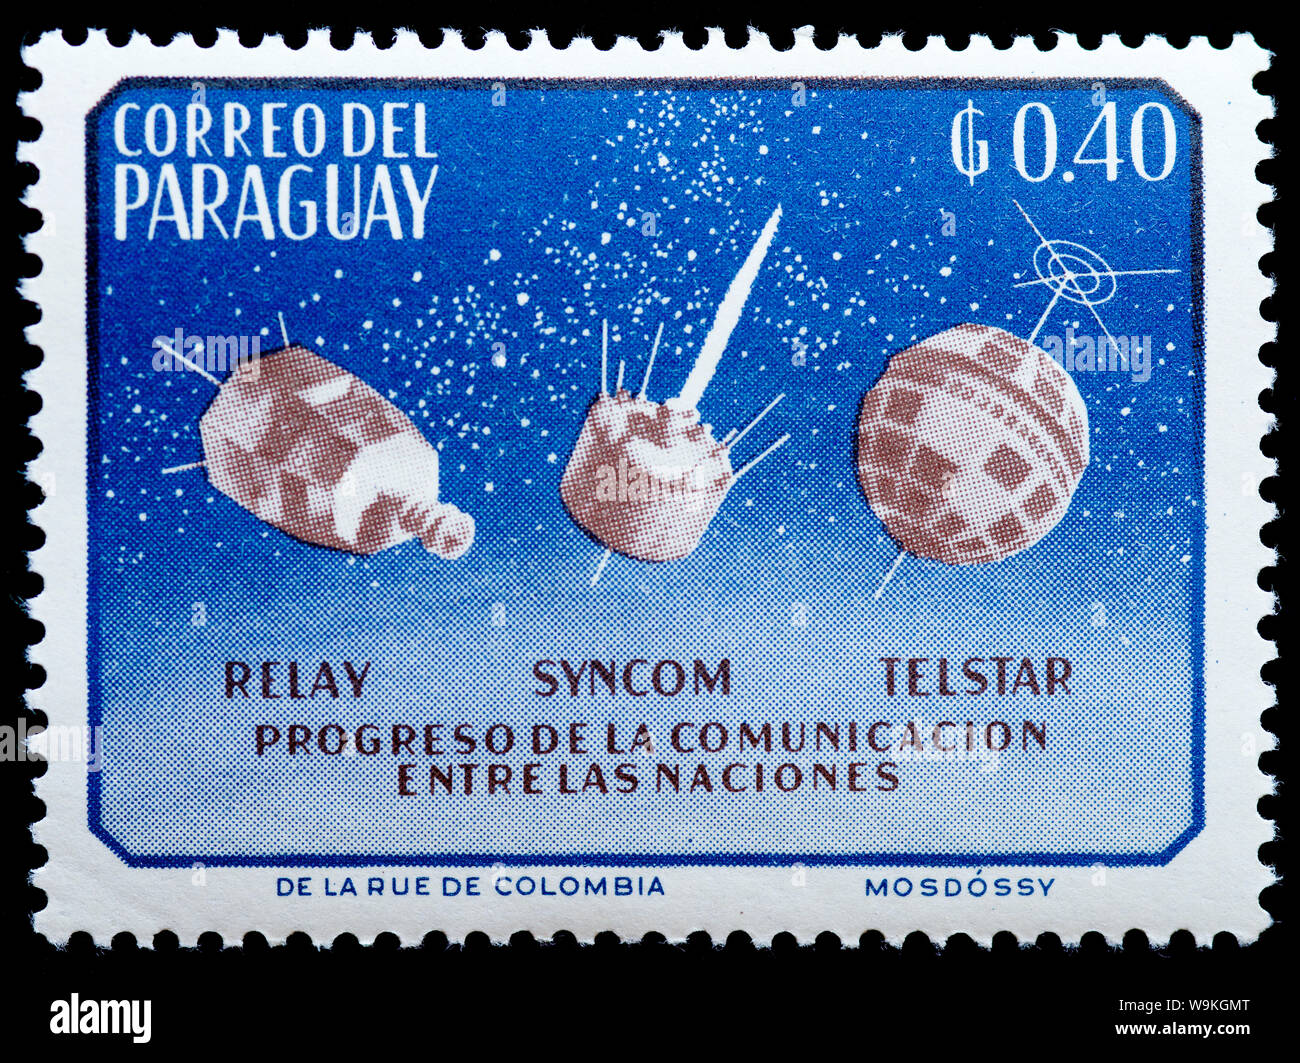 Paraguay - Timbre-satellites dans l'espace Banque D'Images